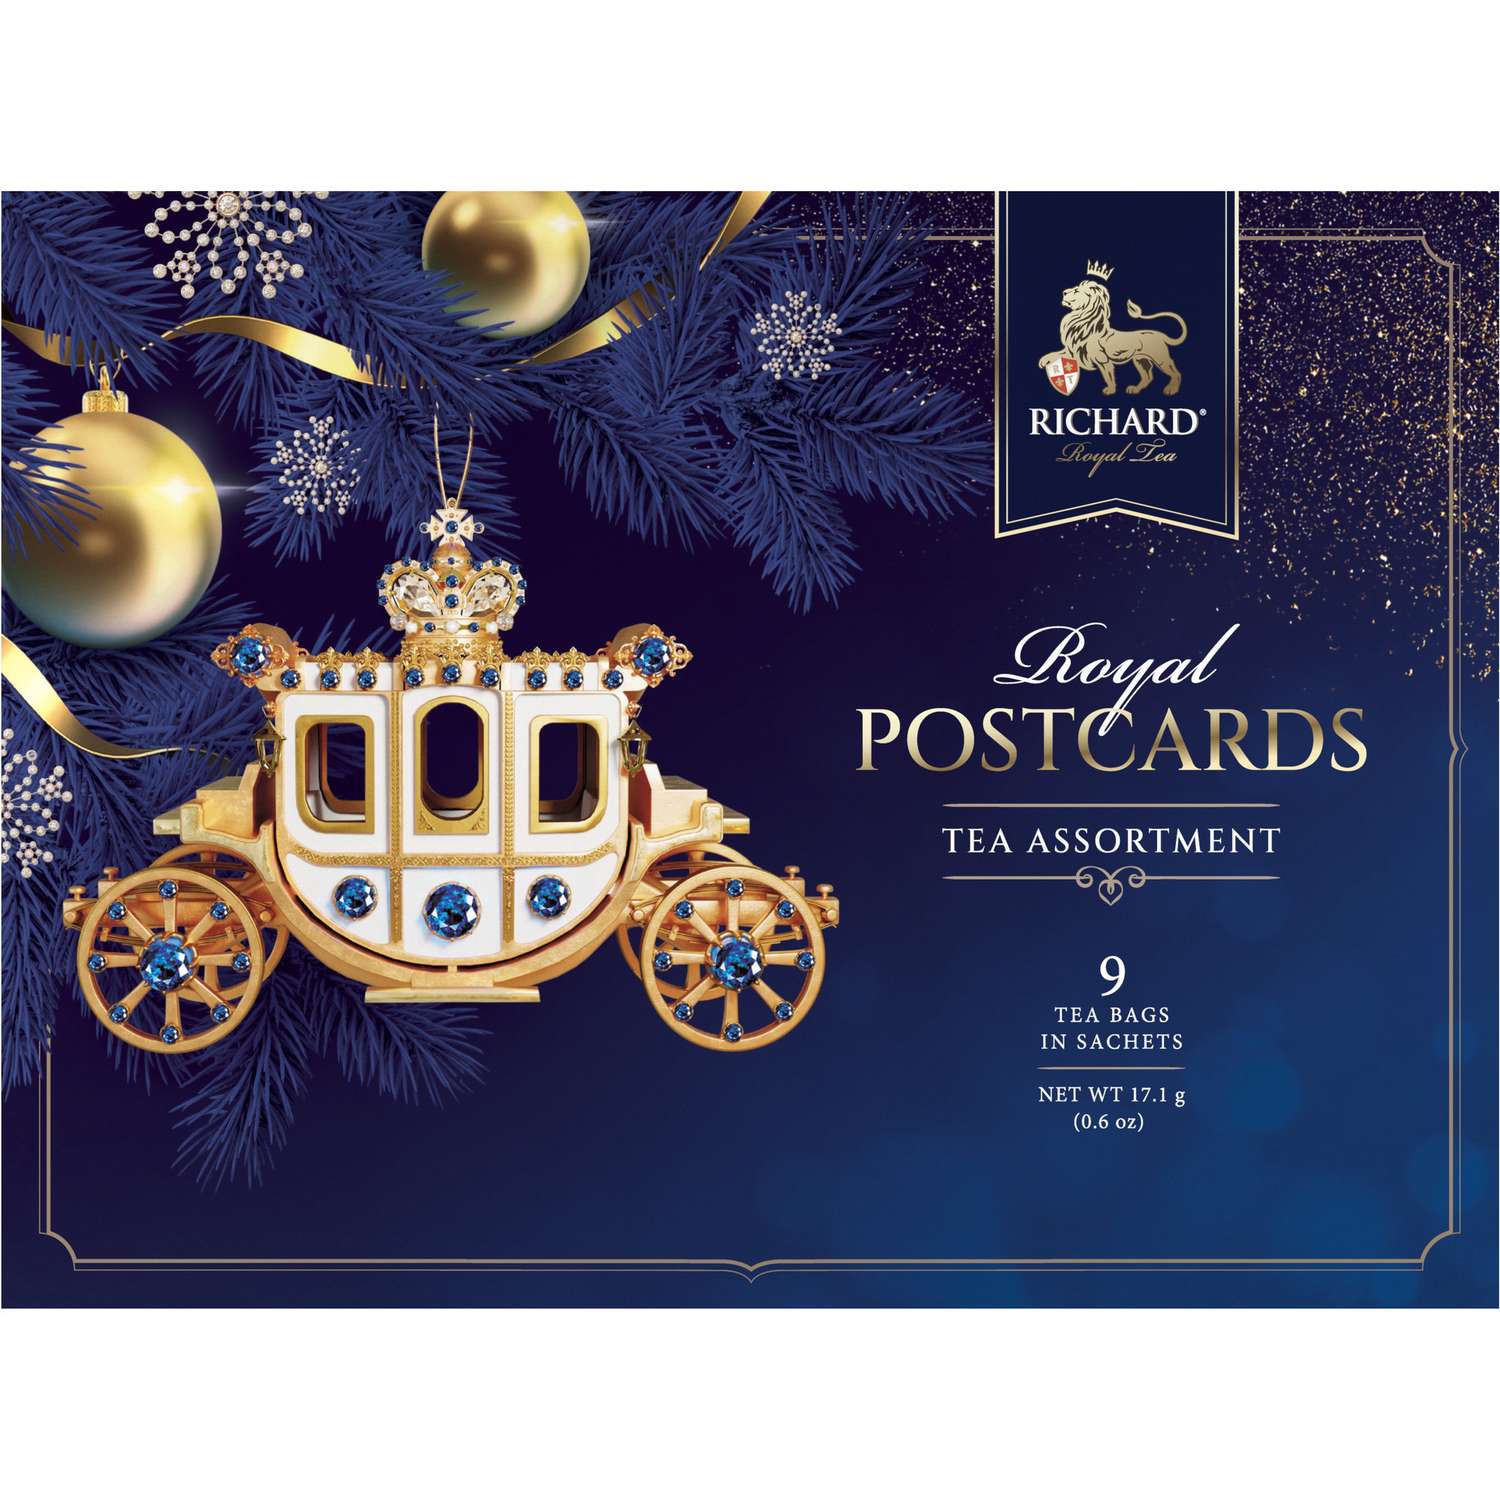 Чайное ассорти Richard Royal Postcards tea assortment к новому году карета 9 пакетиков - фото 1